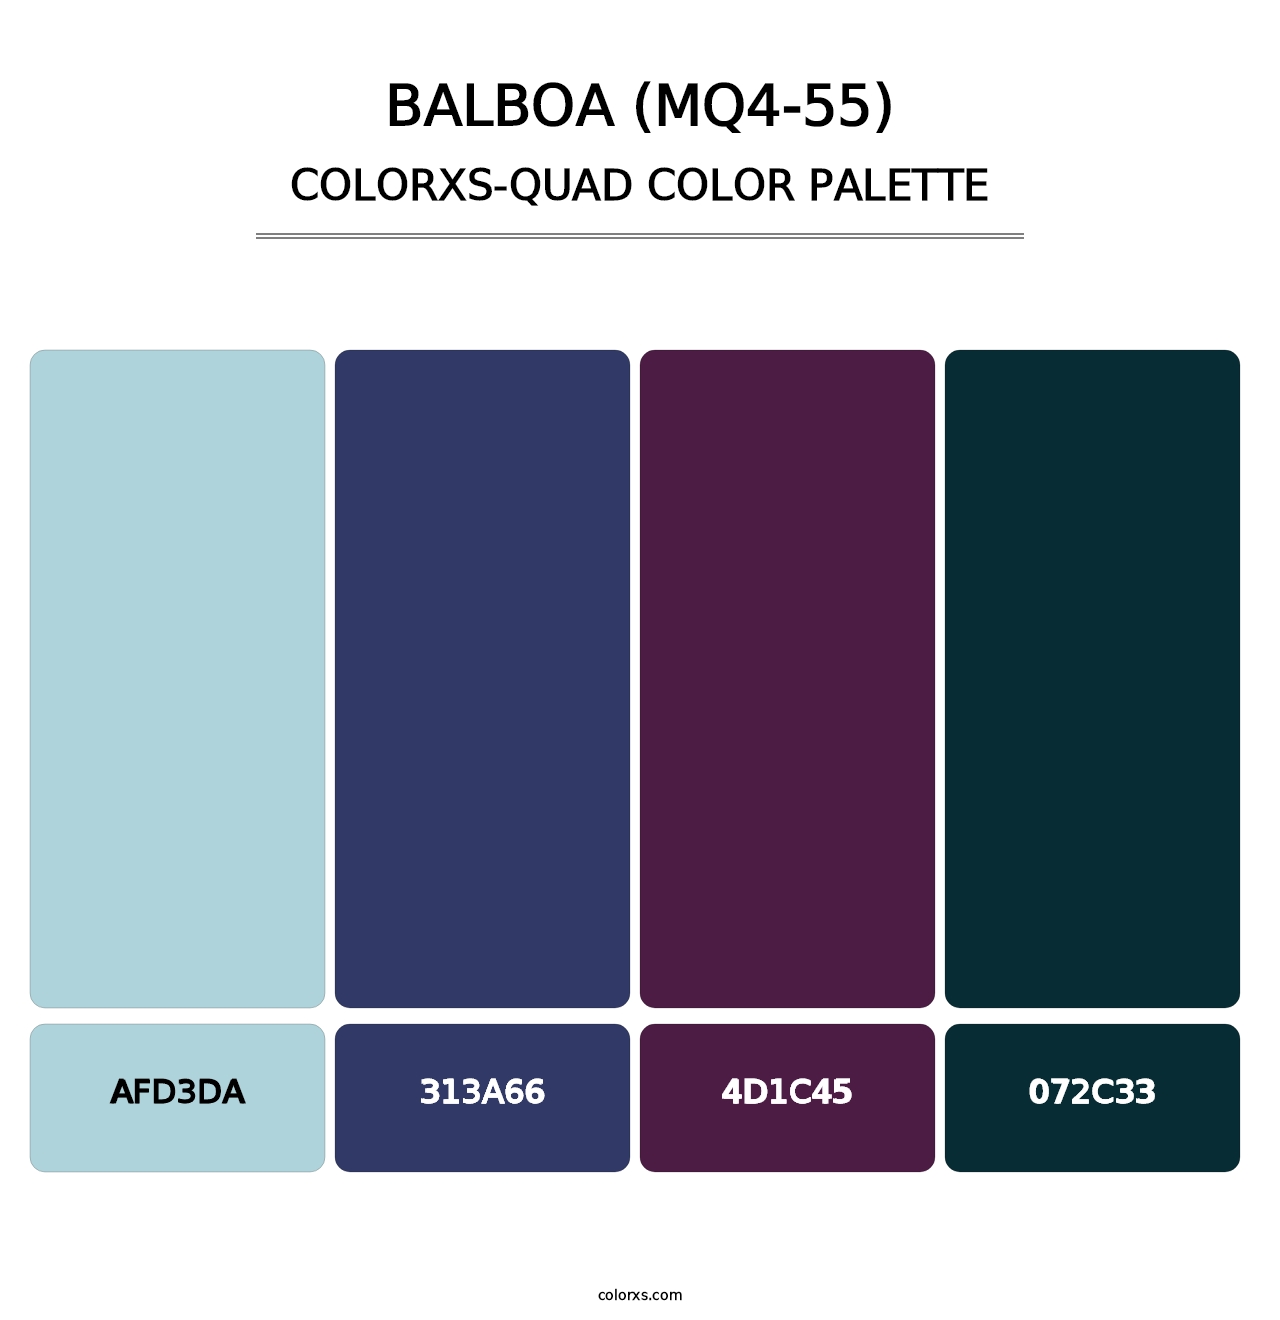 Balboa (MQ4-55) - Colorxs Quad Palette